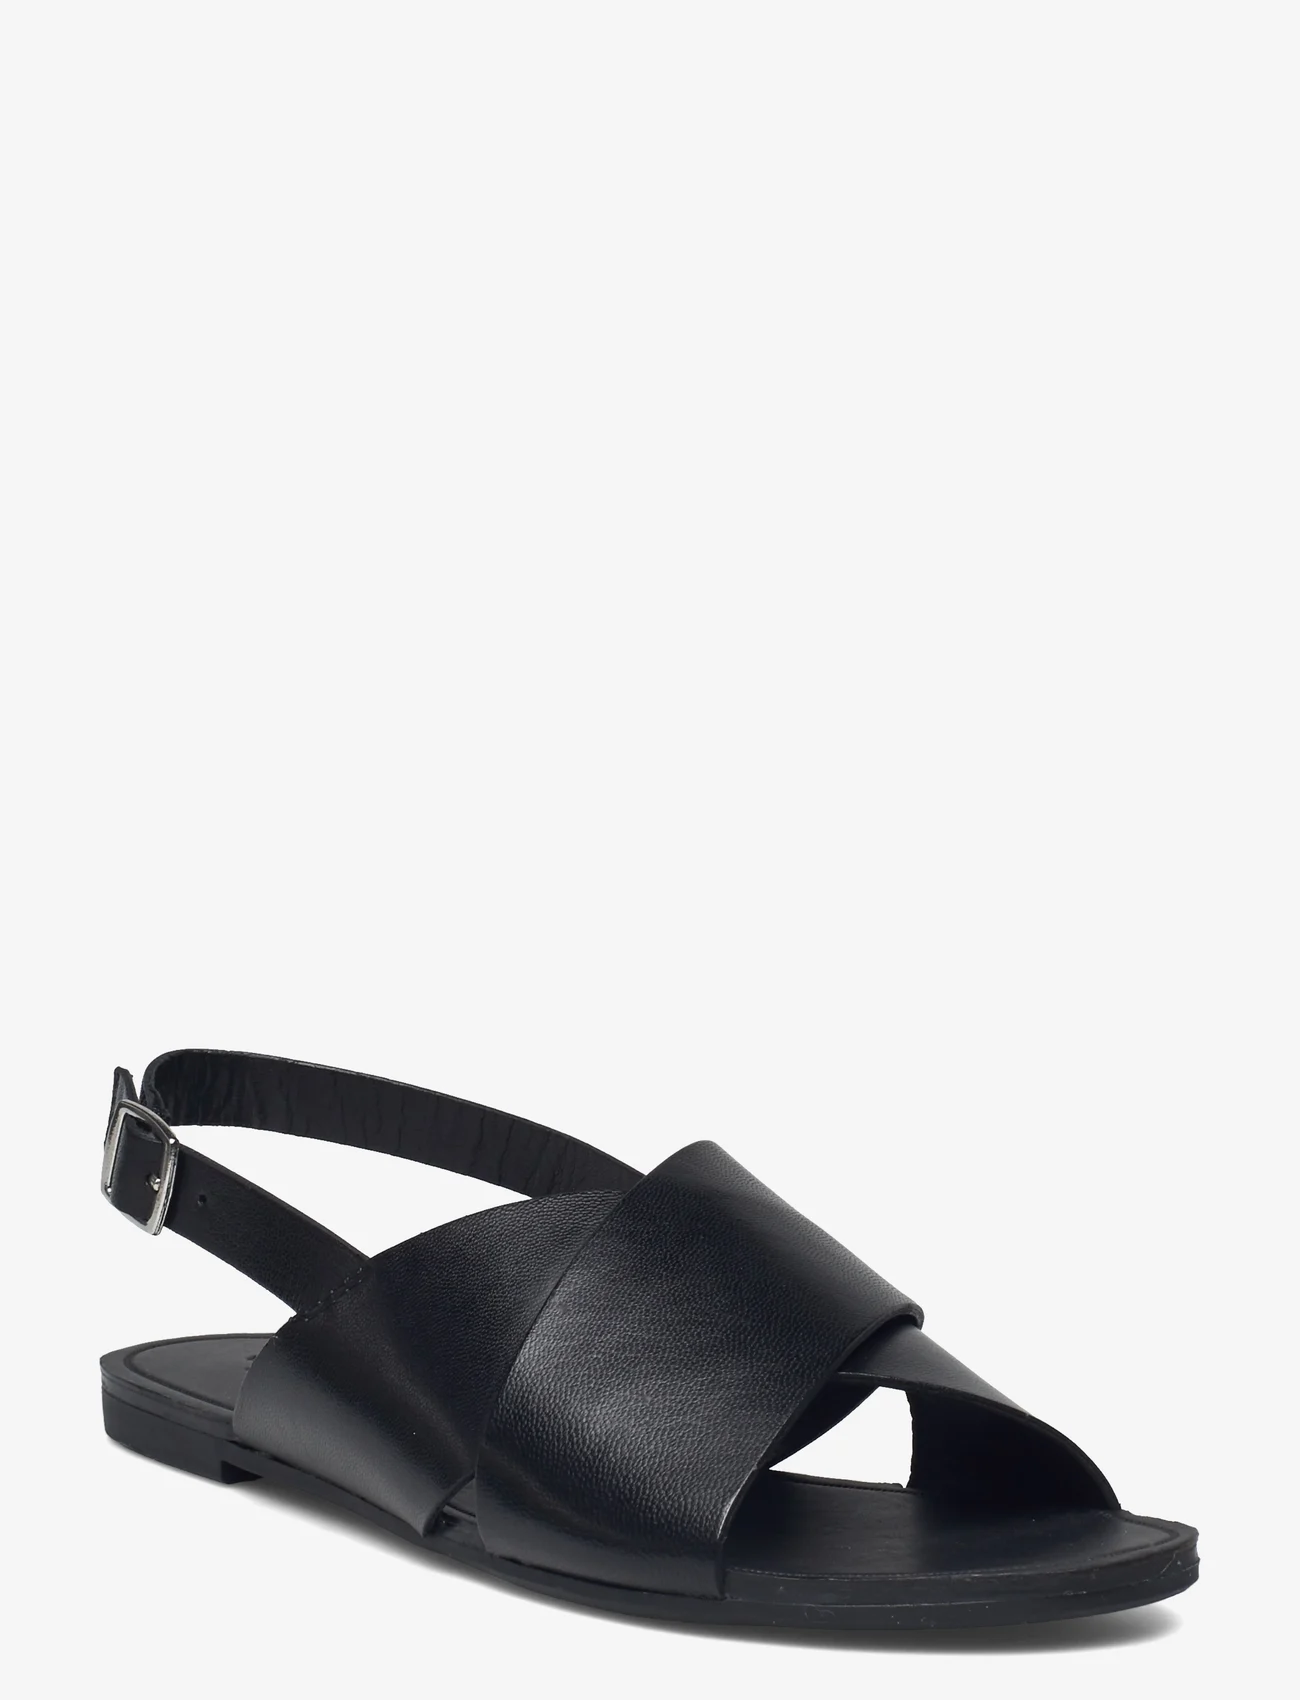 VAGABOND - TIA - platte sandalen - black - 0